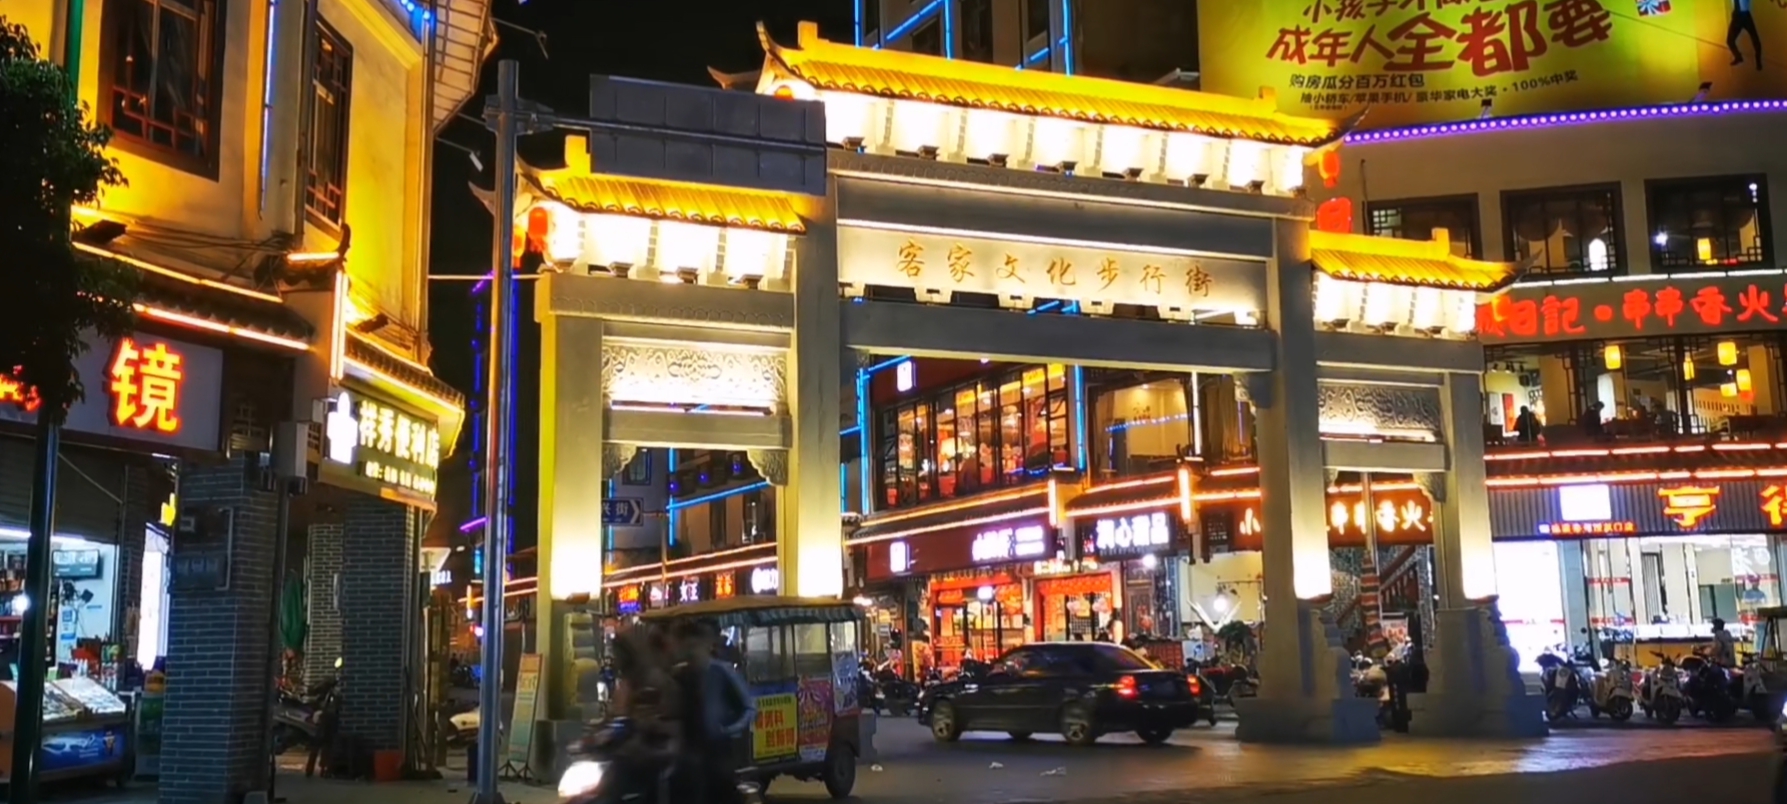 广西玉林博白县有一条美食街,白天晚上都很热闹的街道